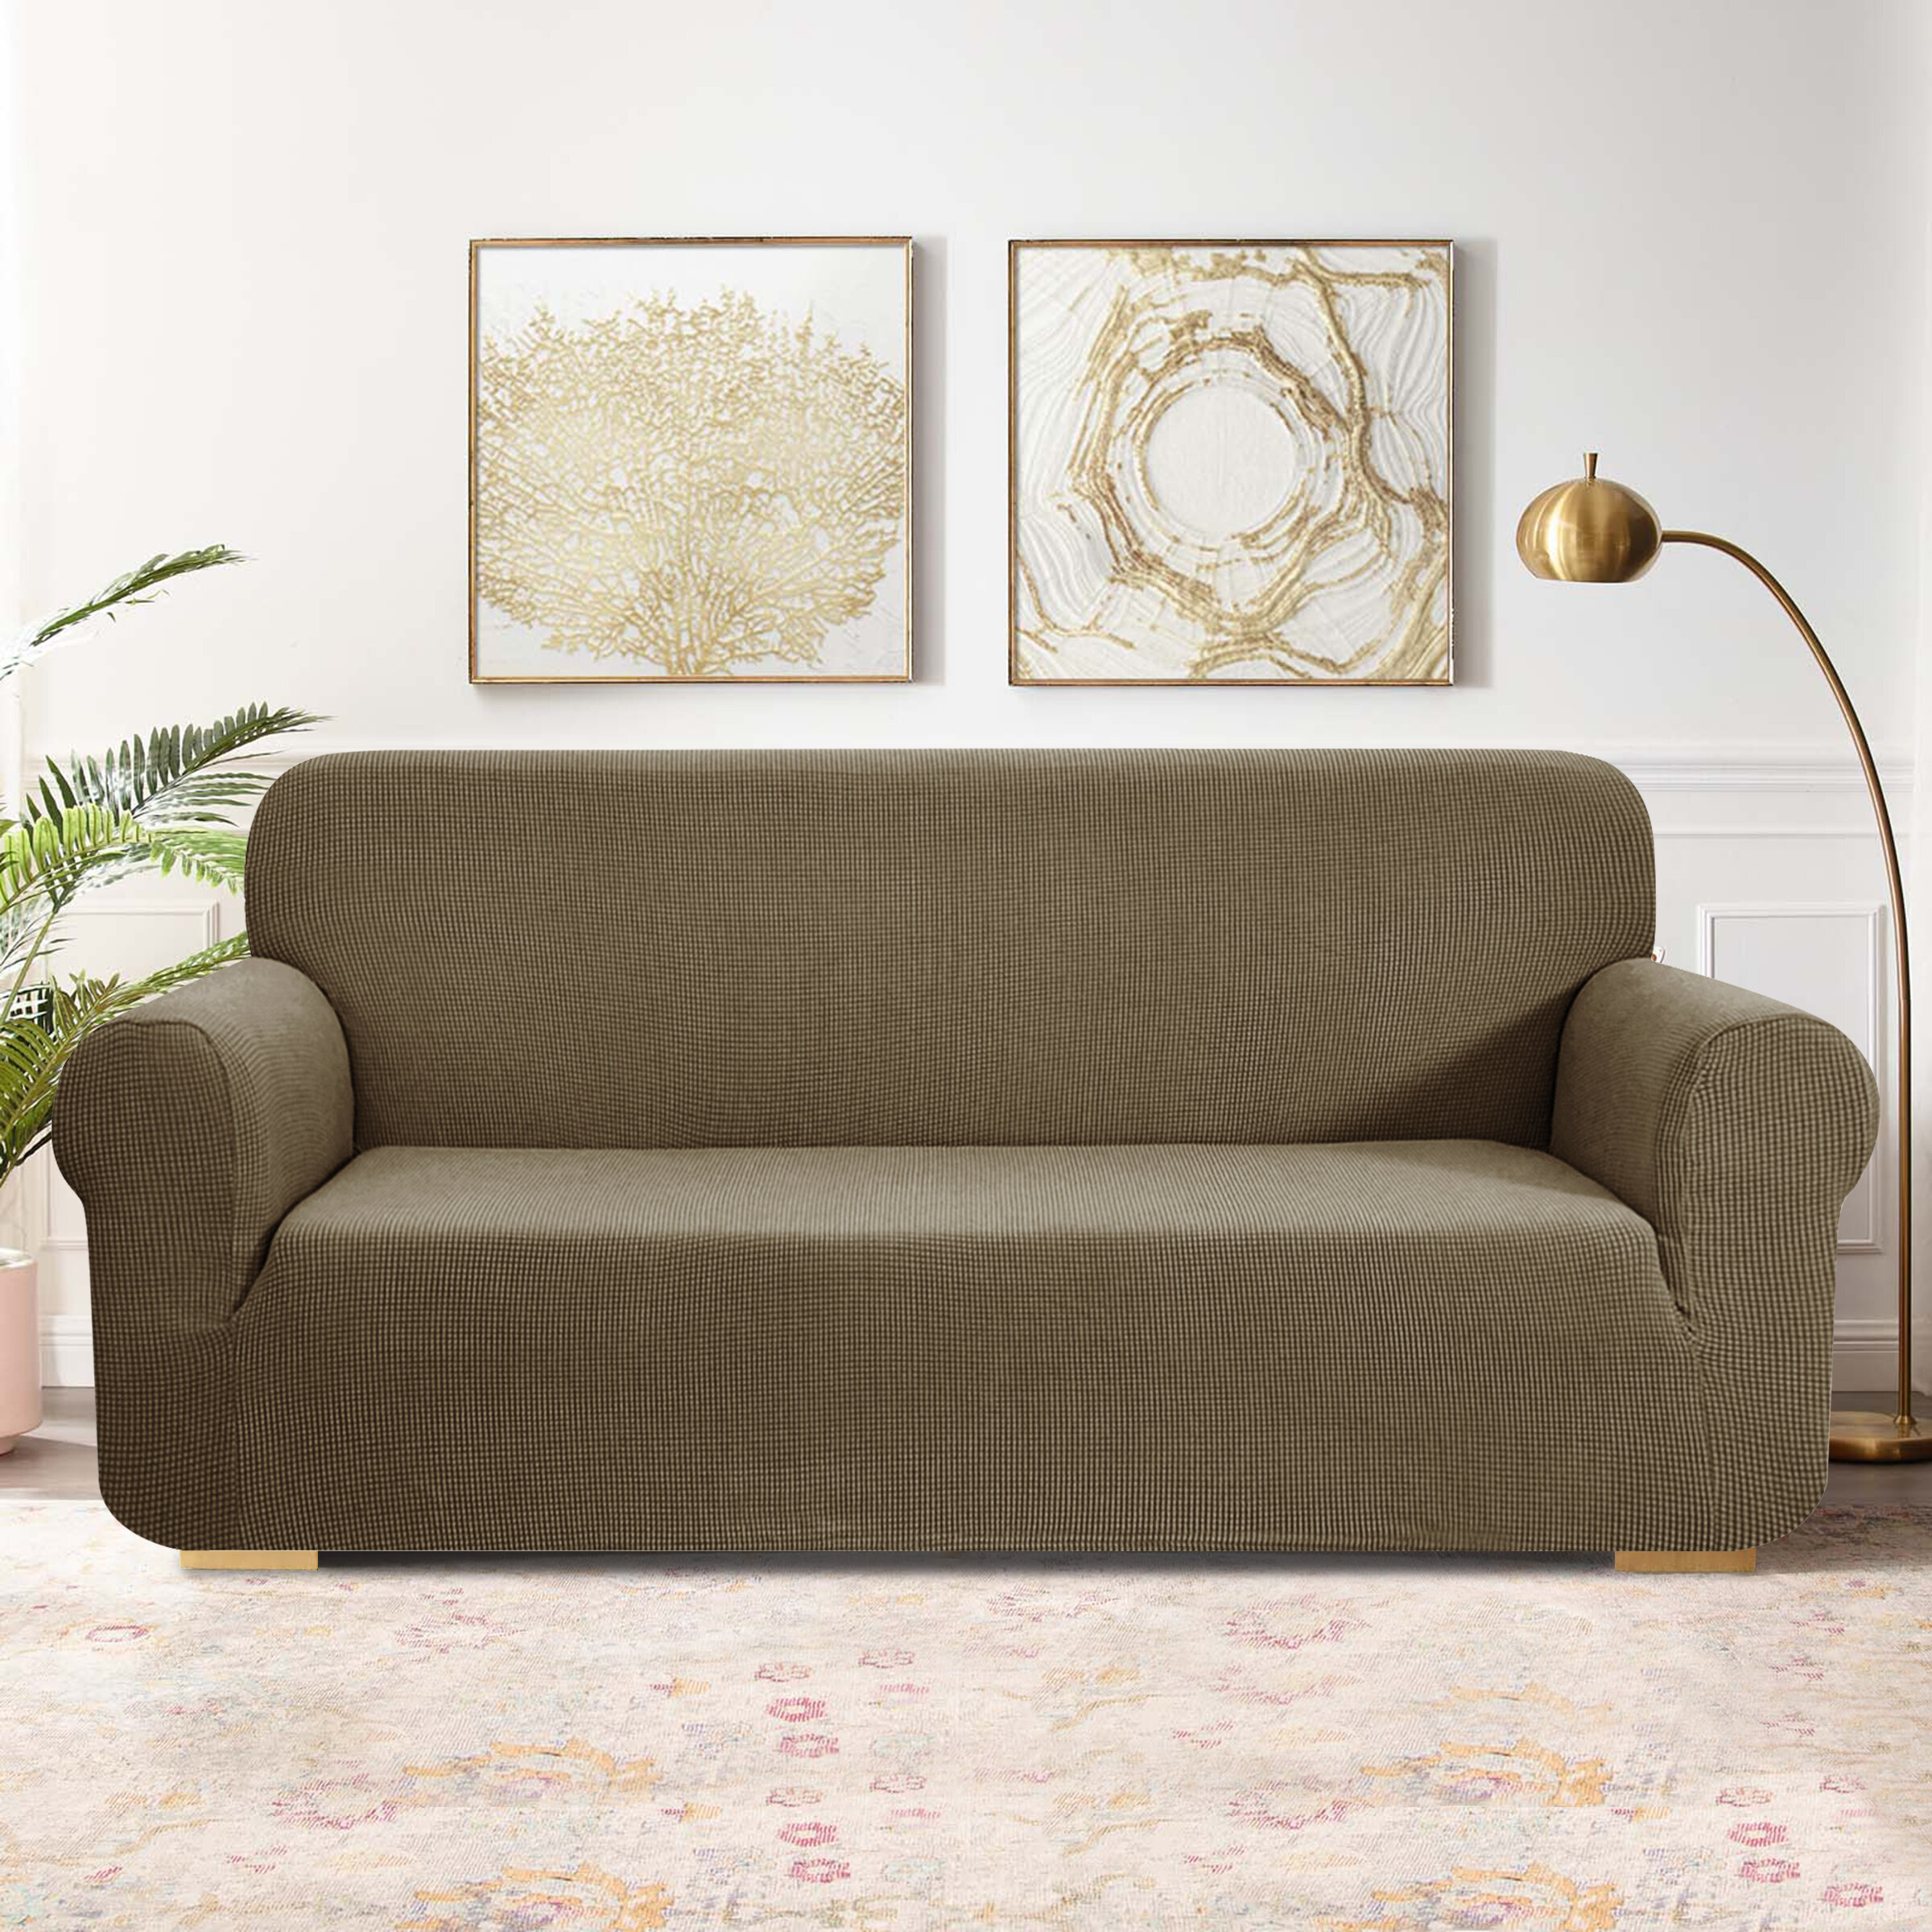 https://assets.wfcdn.com/im/17113102/compr-r85/1690/169045340/textured-grid-box-cushion-sofa-slipcover.jpg